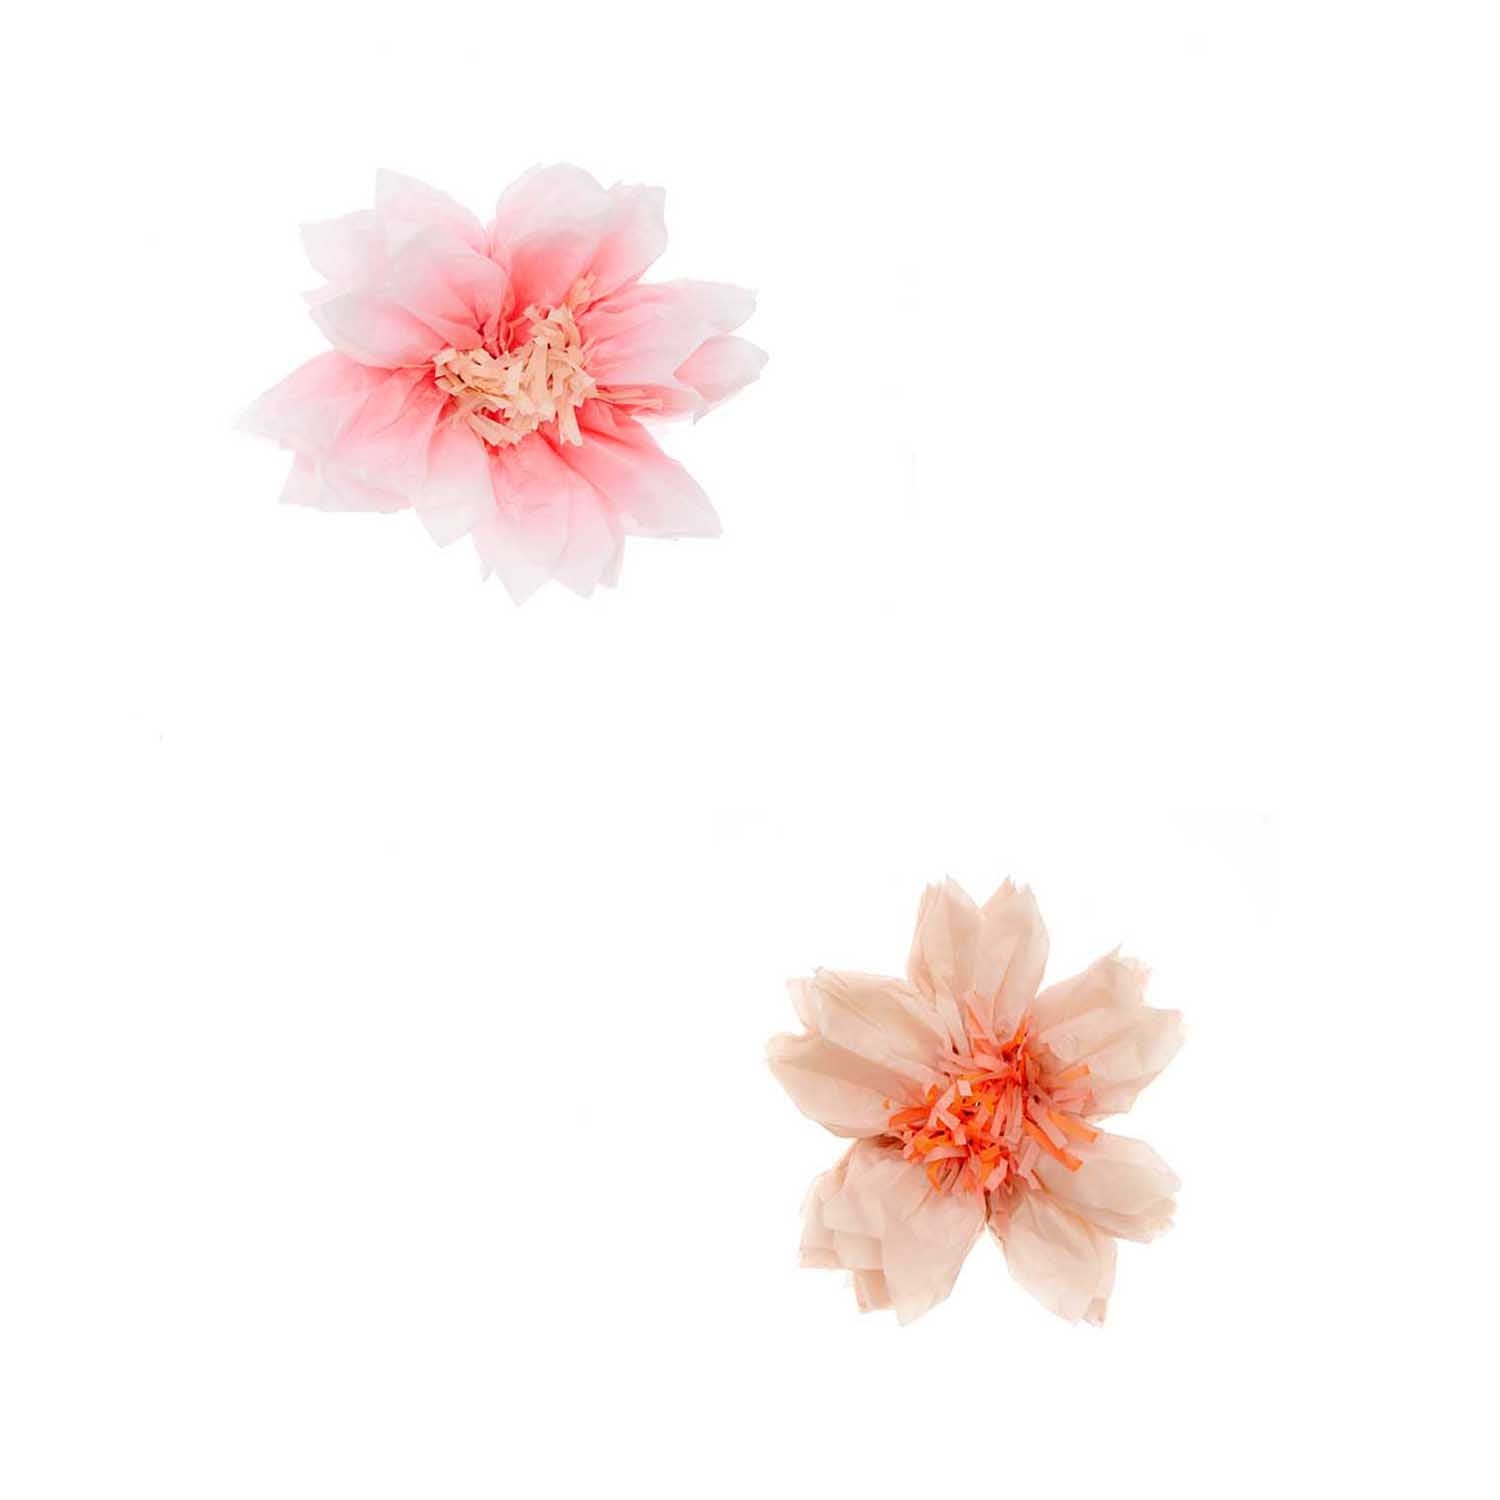 Tissue papier kersenbloemen zacht roze en zacht oranje (Ø 25cm)